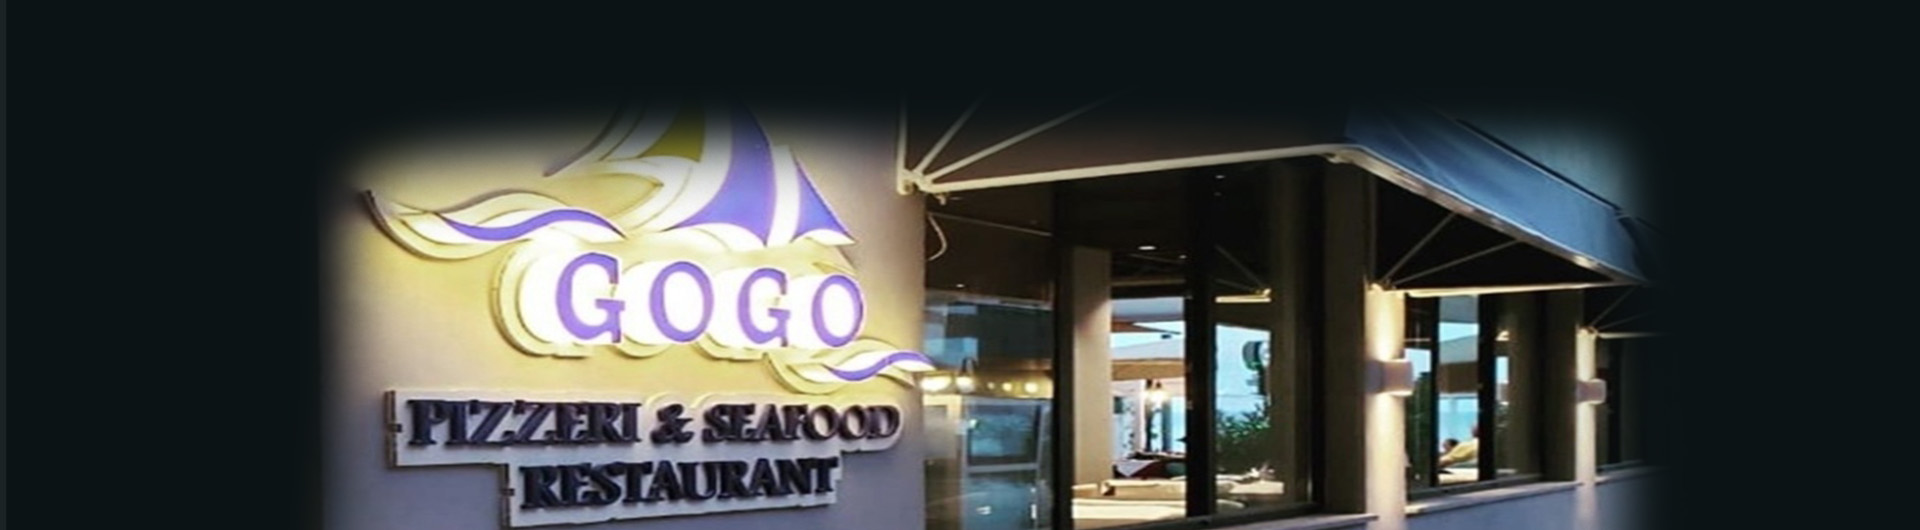 gogo-restaurant-outside